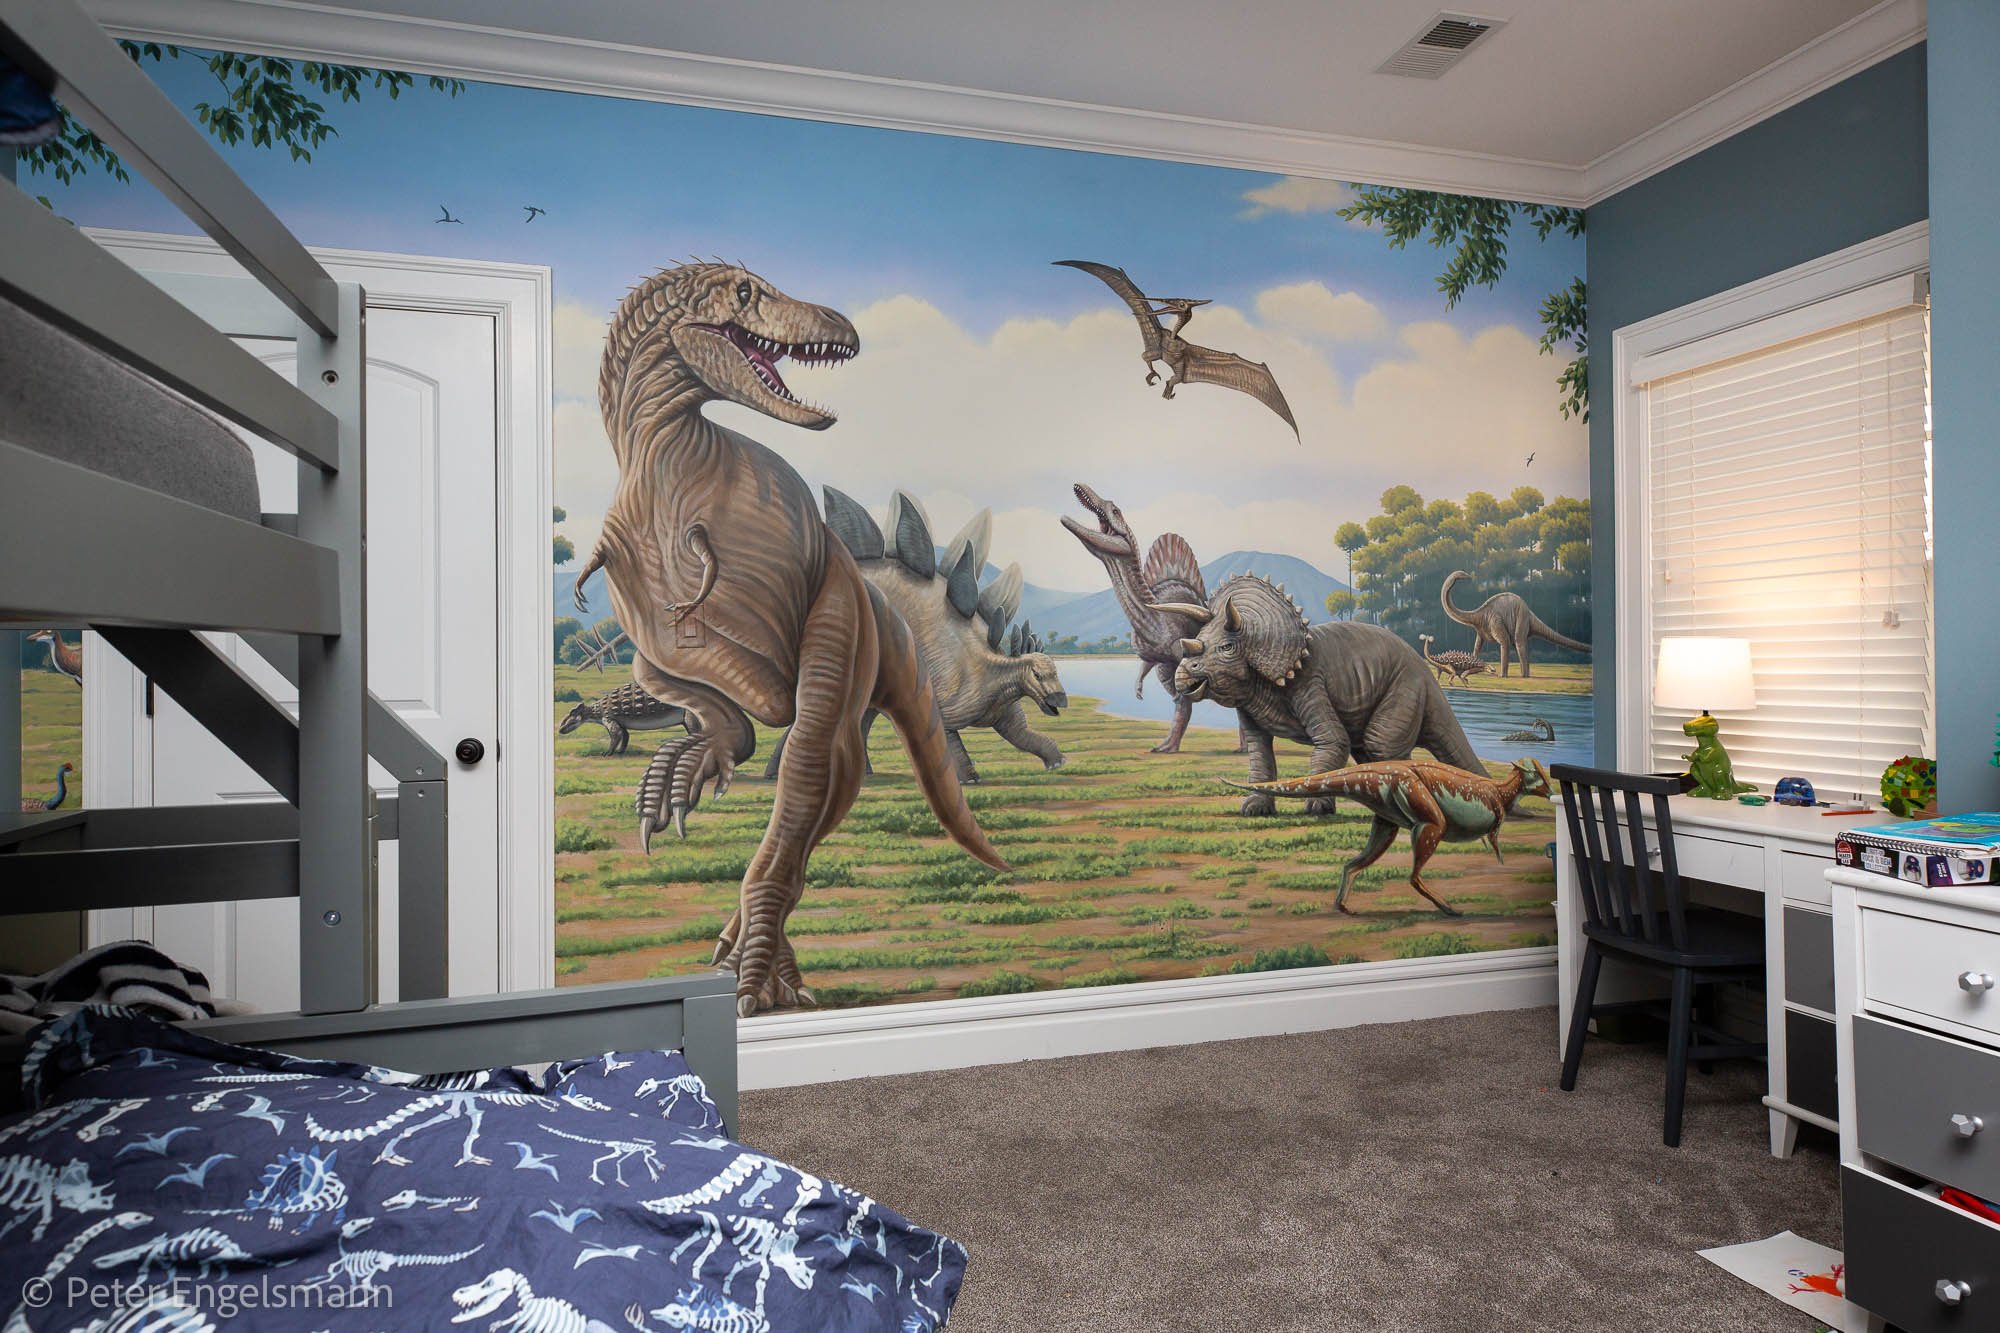  Dinosaur Bedroom Mural, acrylic on wallboard, private residence. © Peter K. Engelsmann 